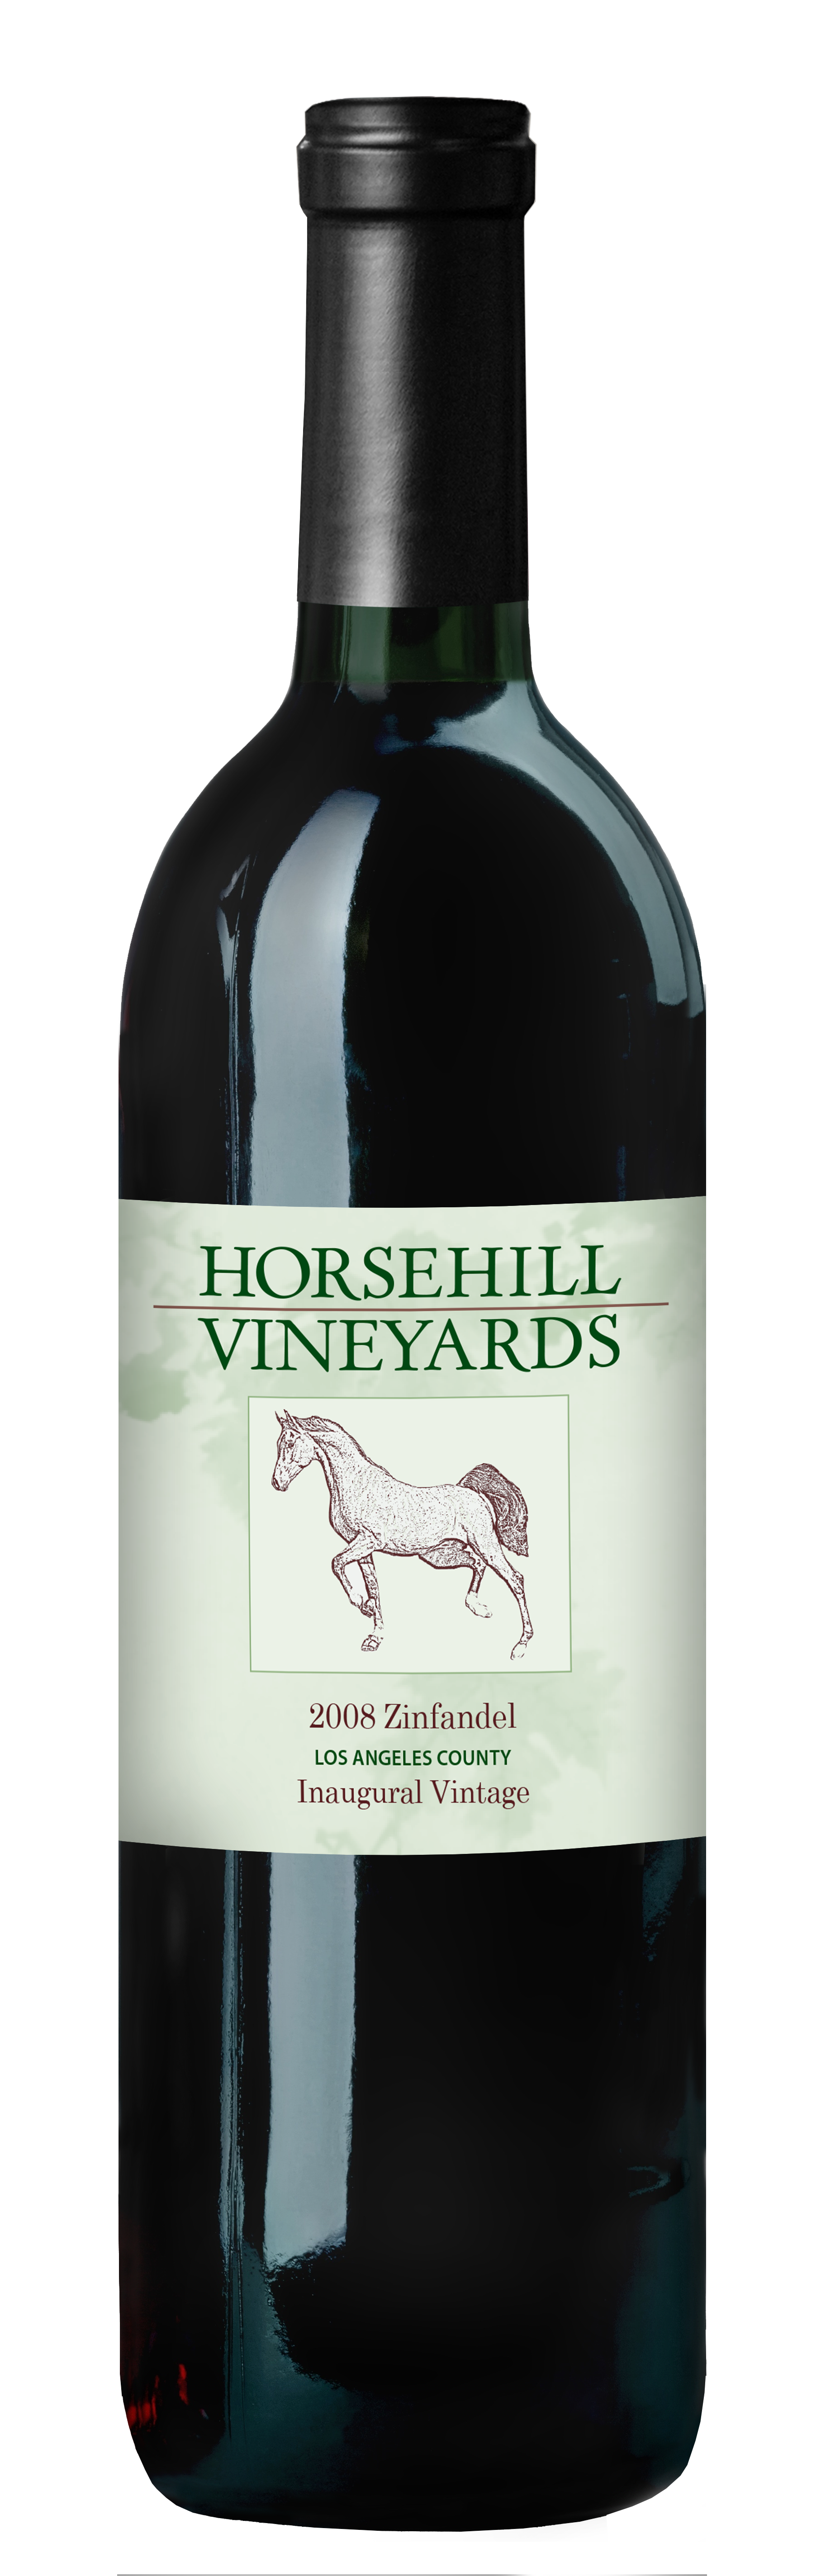 bottle of Horsehill Vineyards 2008 Zinfandel